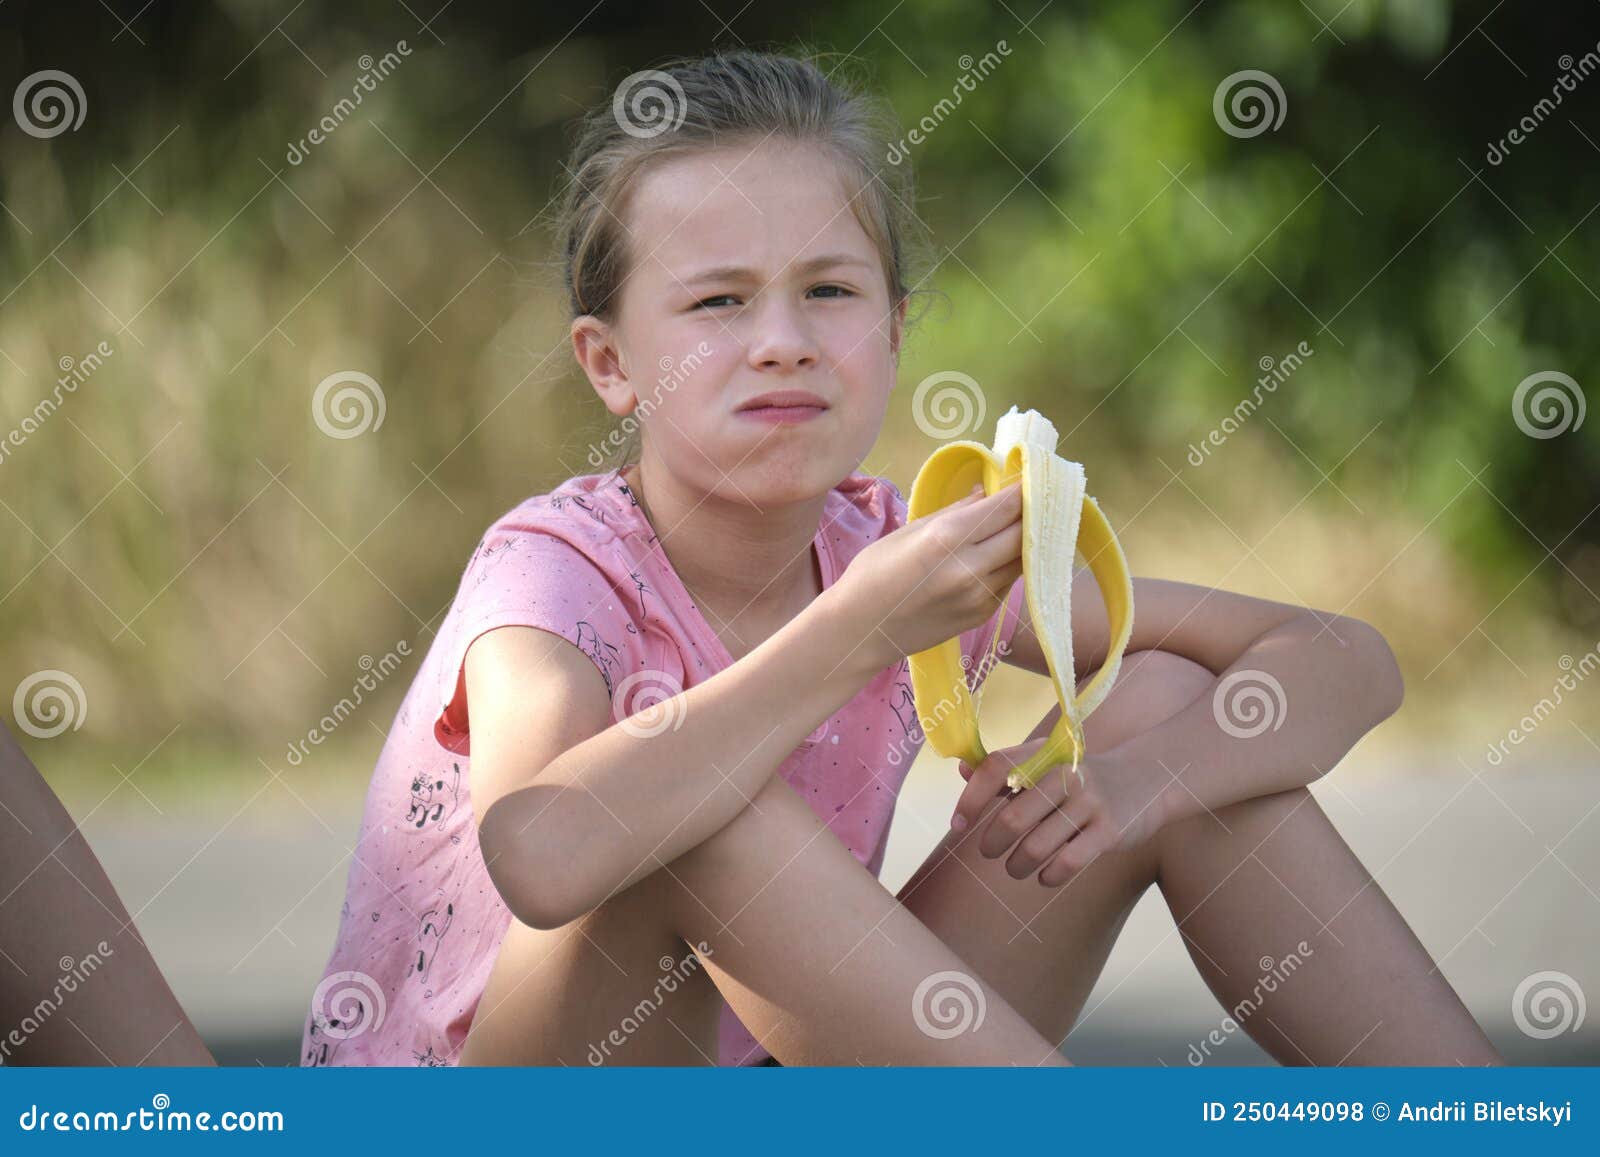 小女孩開心吃著香蕉圖片素材-JPG圖片尺寸6720 × 4480px-高清圖片501371802-zh.lovepik.com